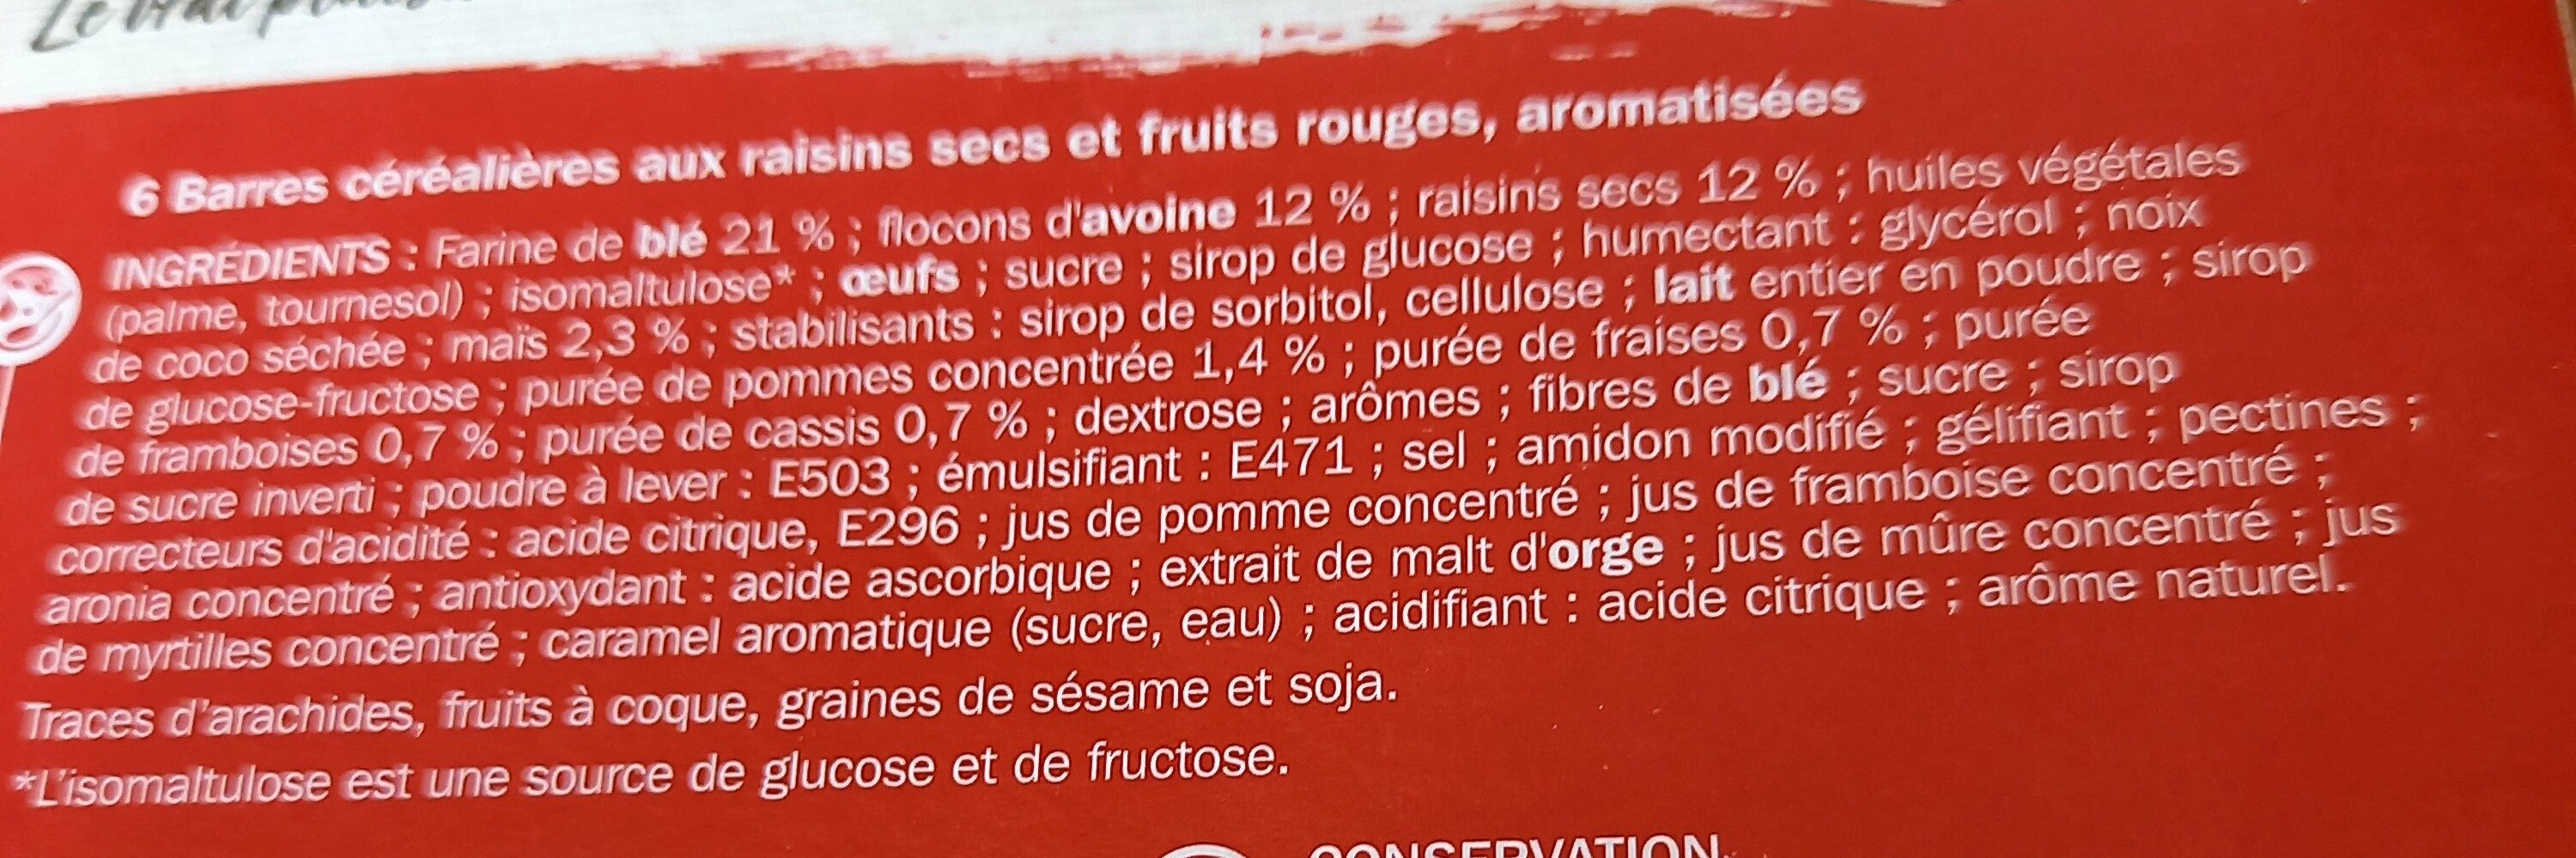 Fruits rouges moelleuses 3 céréales - Ingredients - fr